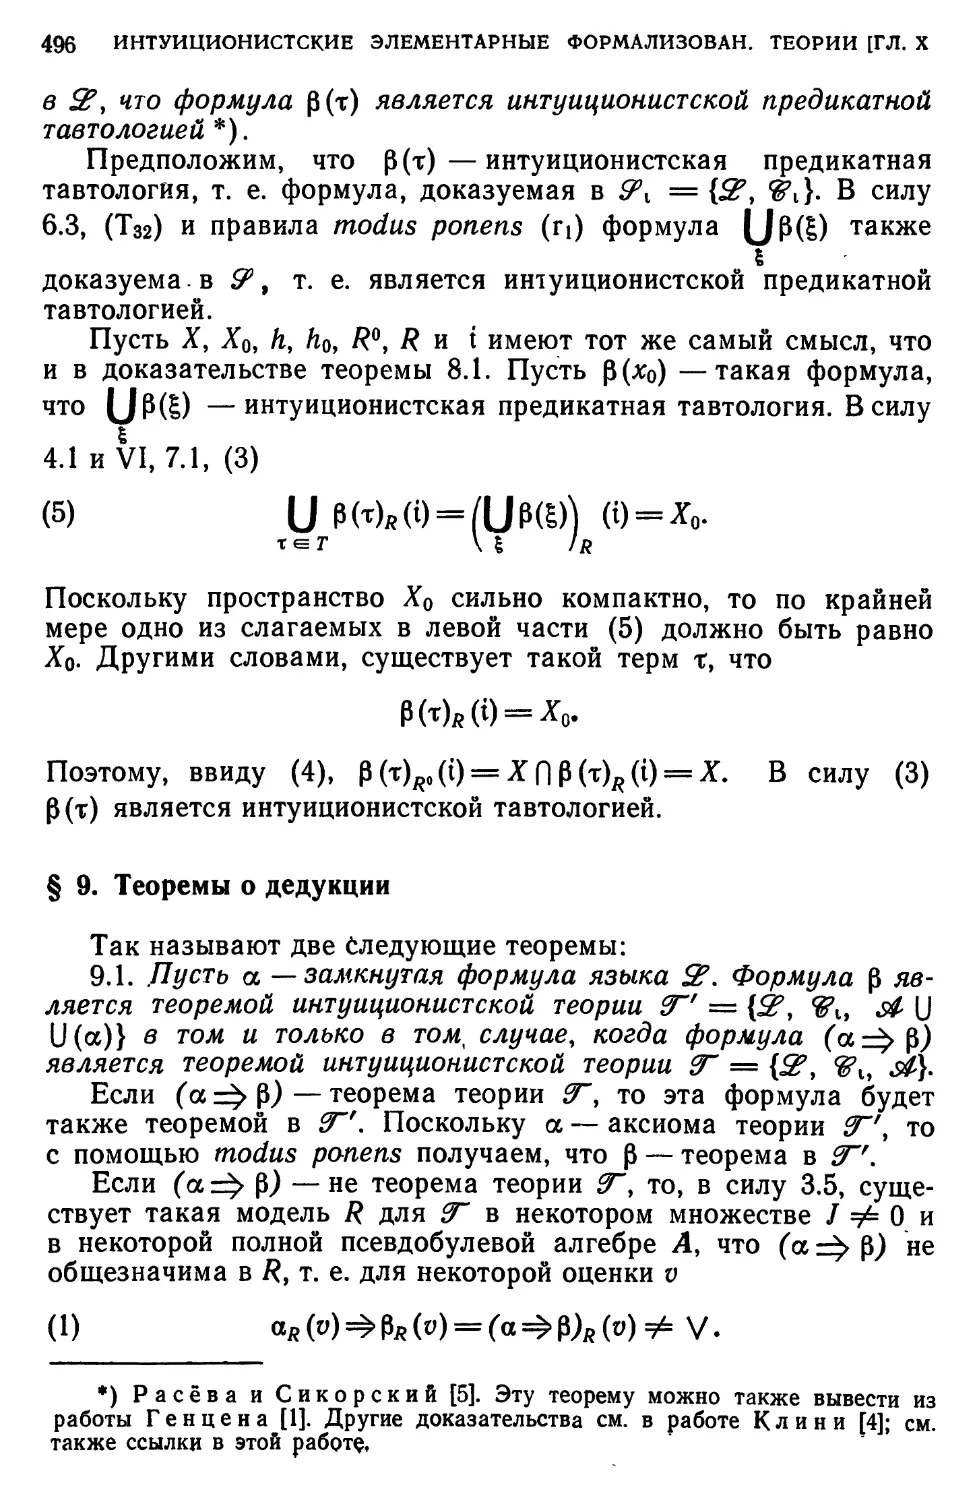 § 9. Теоремы о дедукции